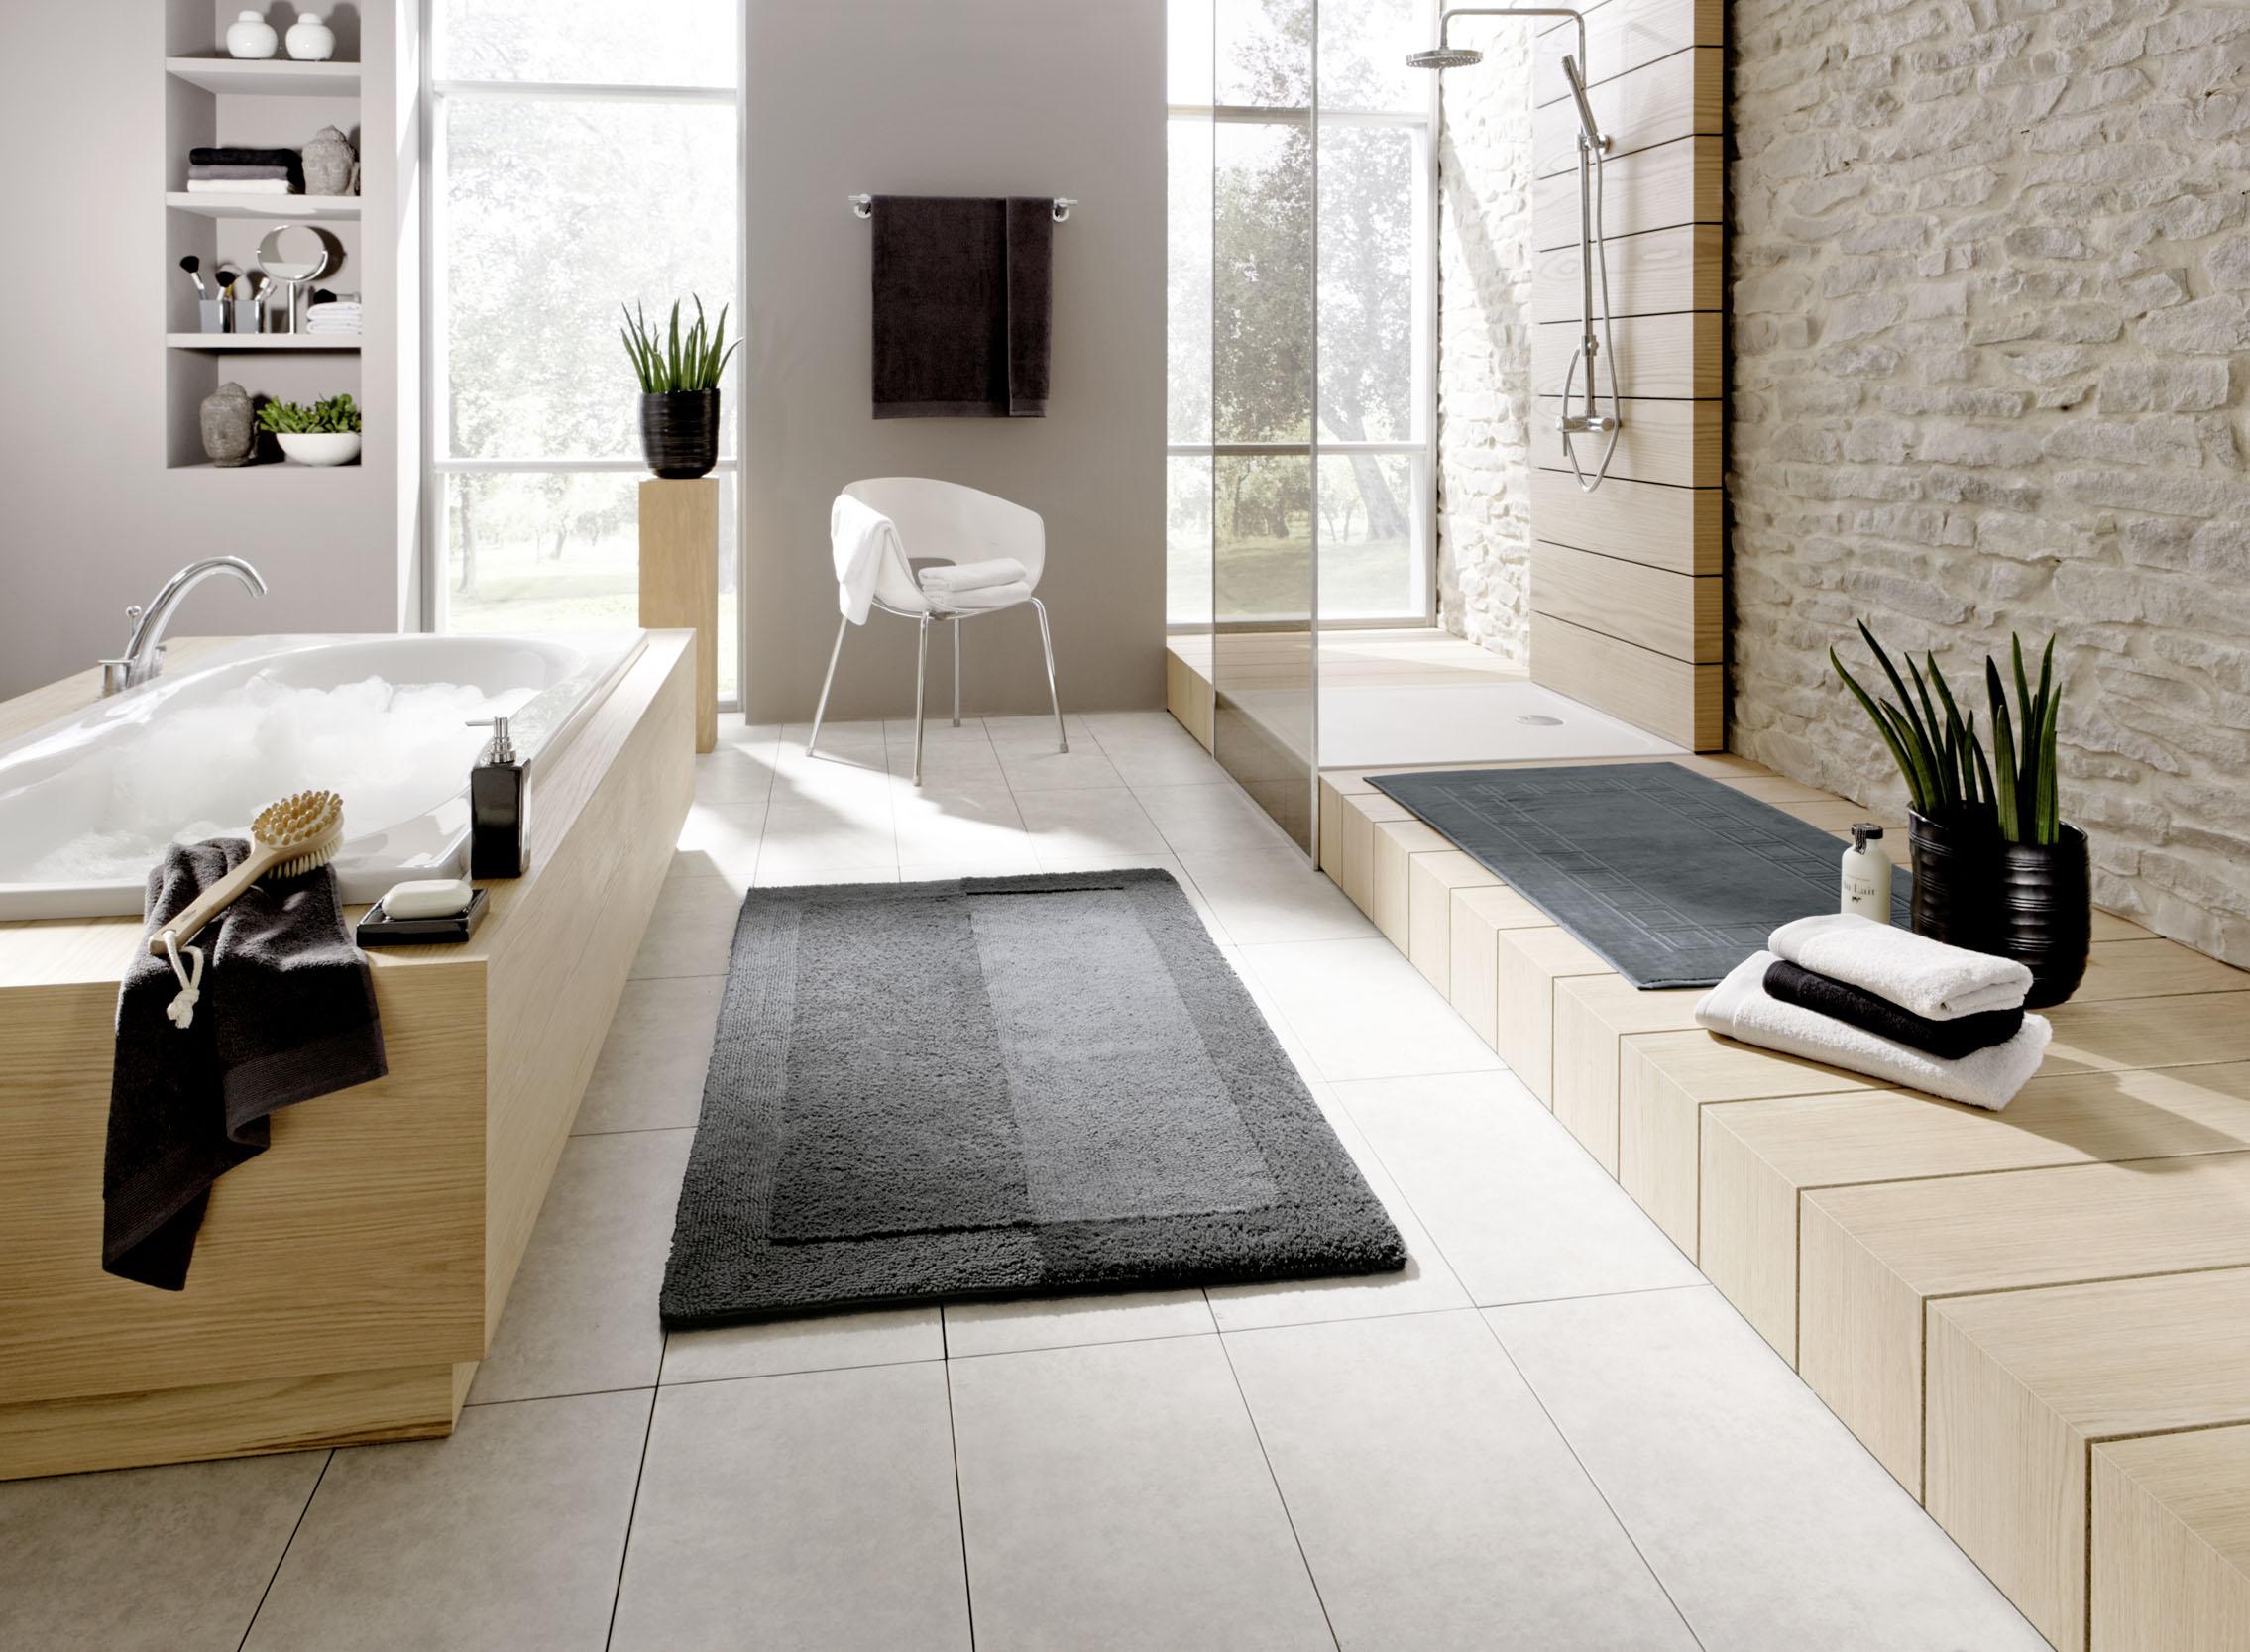 Badezimmer in Naturfarben kombiniert mit grauen Accessoires #badezimmer #badeinrichtung #holzbadewanne ©Kleine Wolke Textilgesellschaft mbH